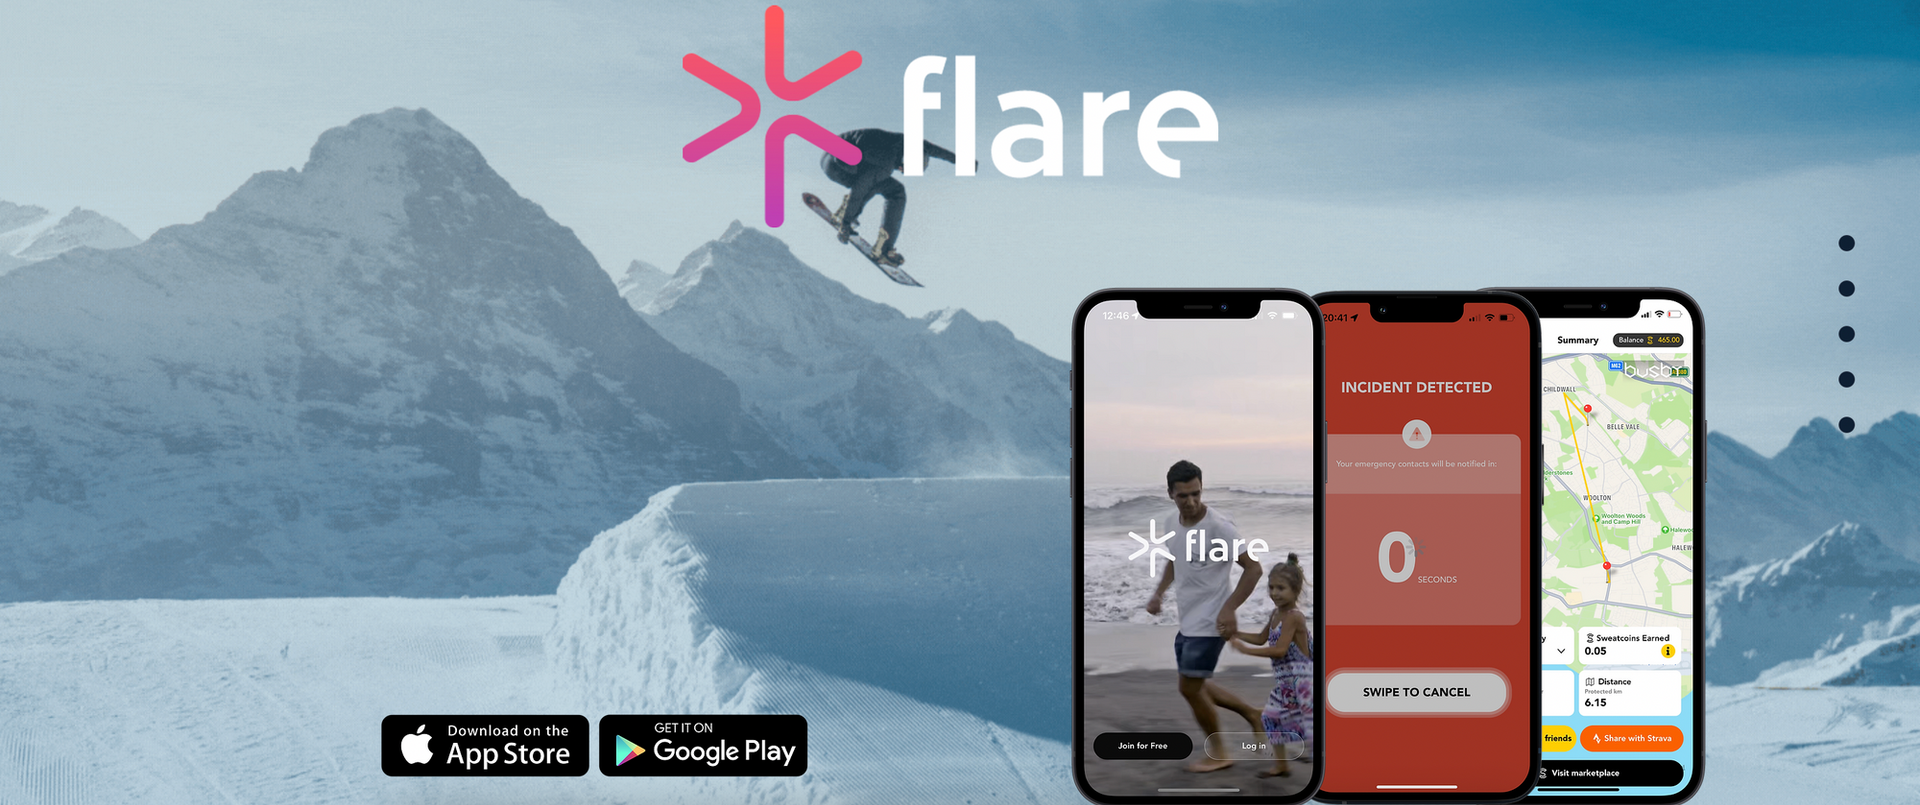 Flare - ứng dụng cảm biến giúp bảo vệ an toàn khi thể thao - Ảnh 1.